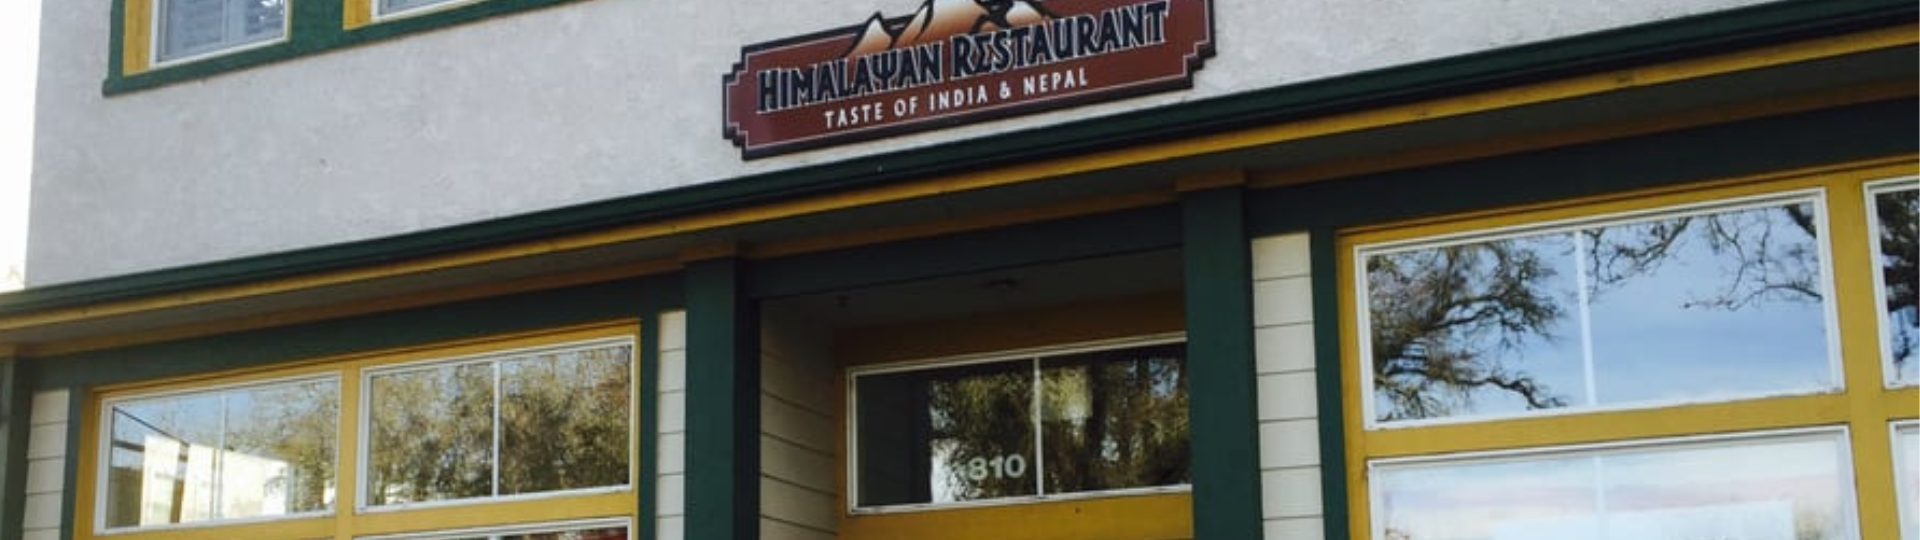 Himalayan Restaurant storefront.